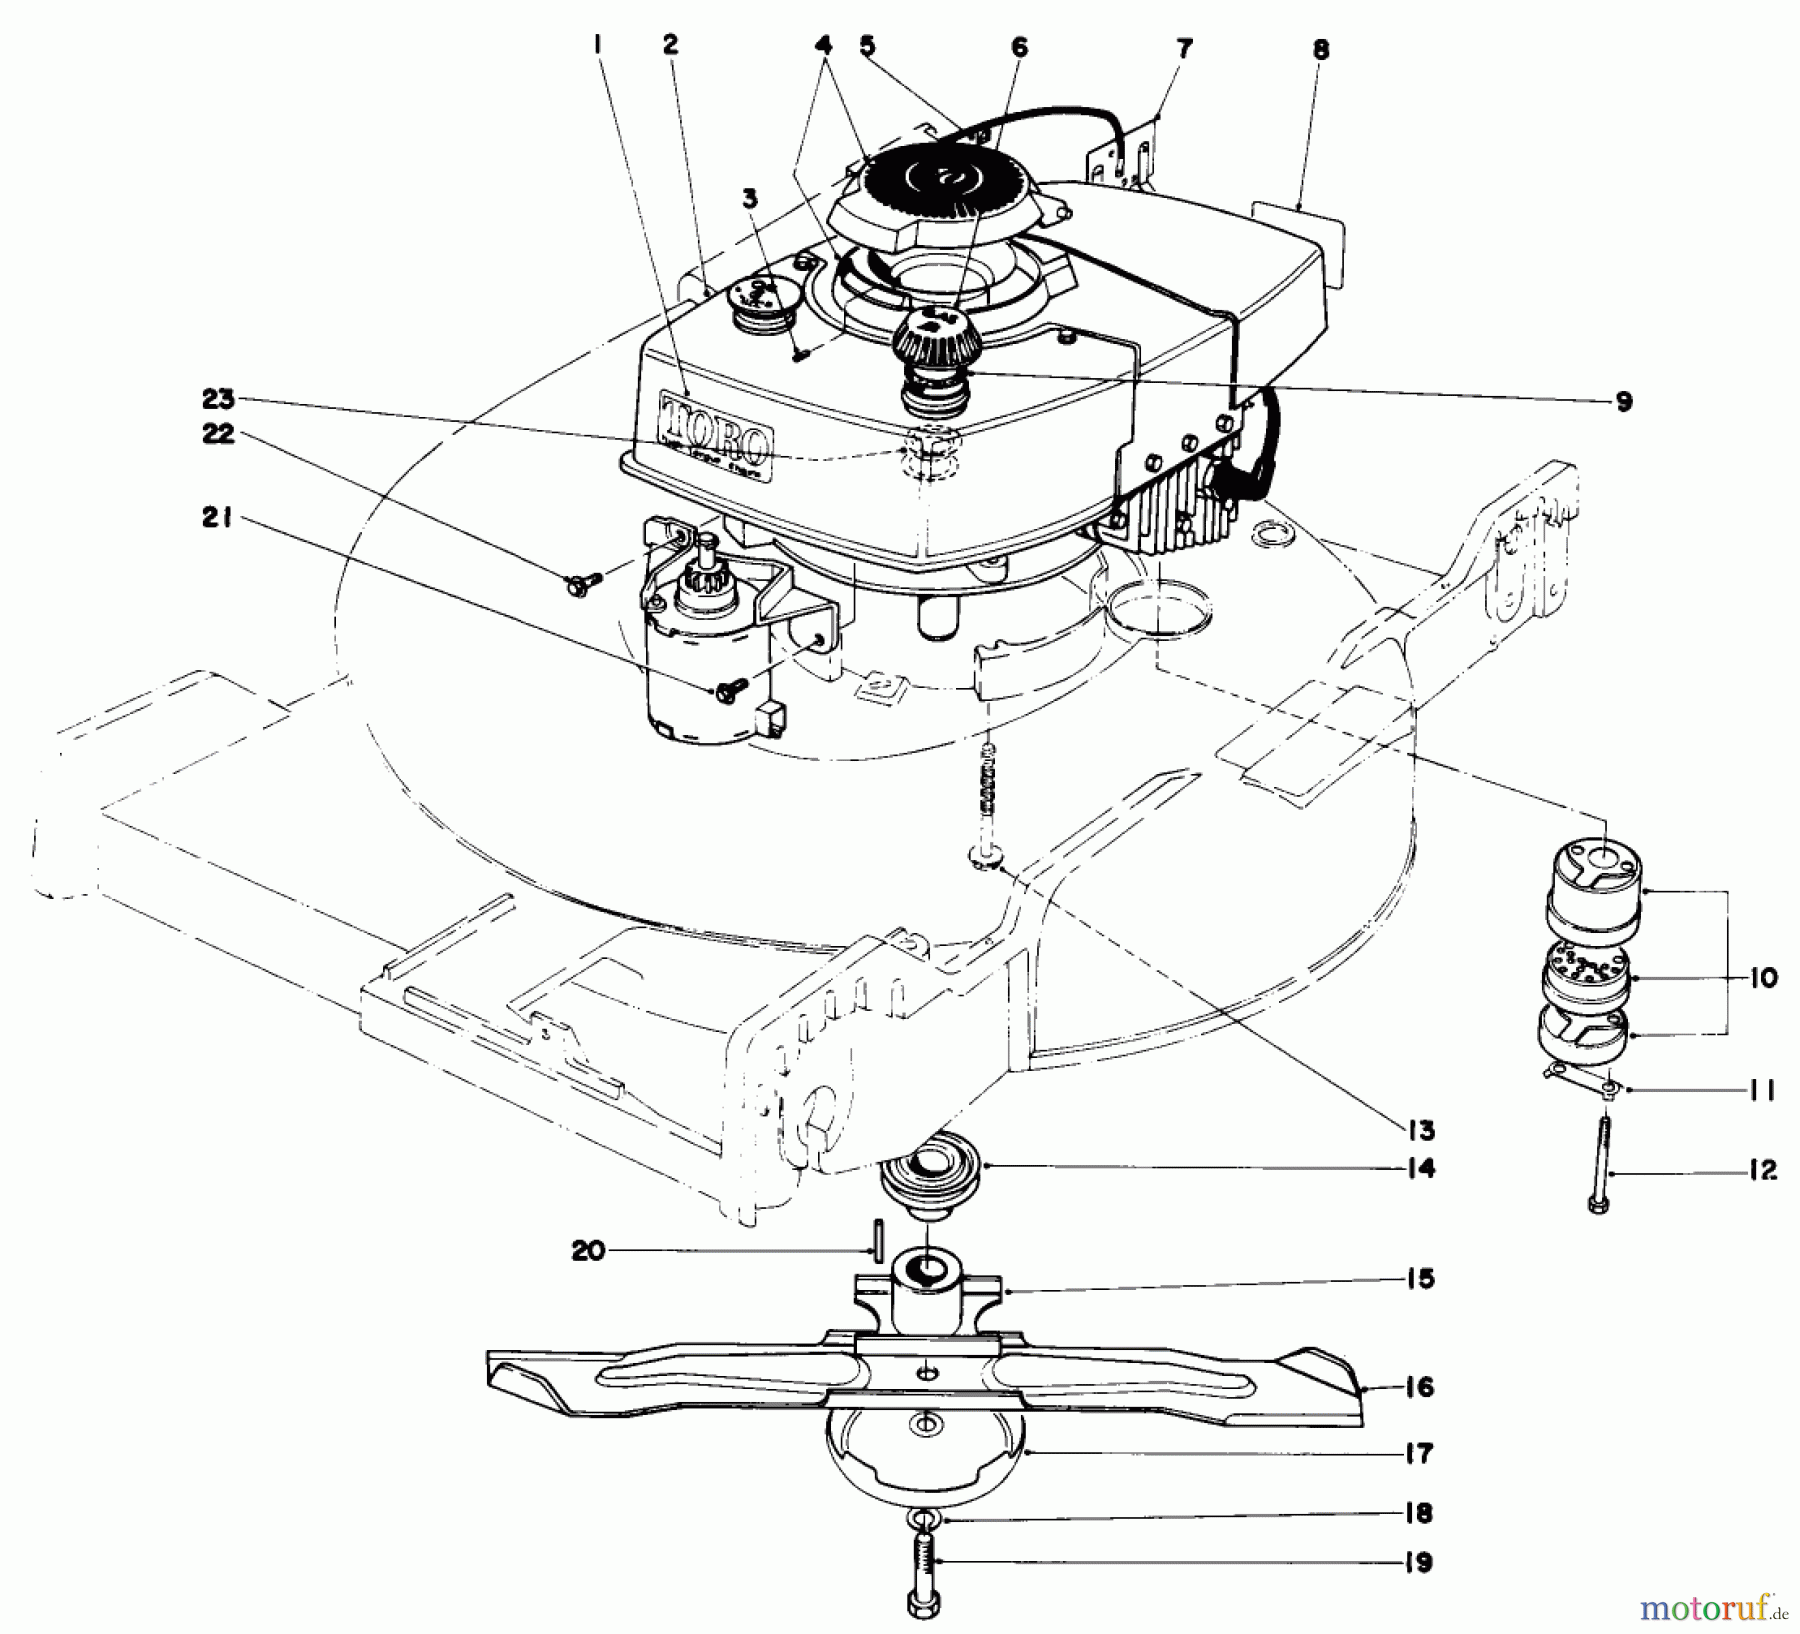  Toro Neu Mowers, Walk-Behind Seite 1 20673 - Toro Lawnmower, 1977 (7000001-7999999) ENGINE ASSEMBLY (MODEL NO. 20673)